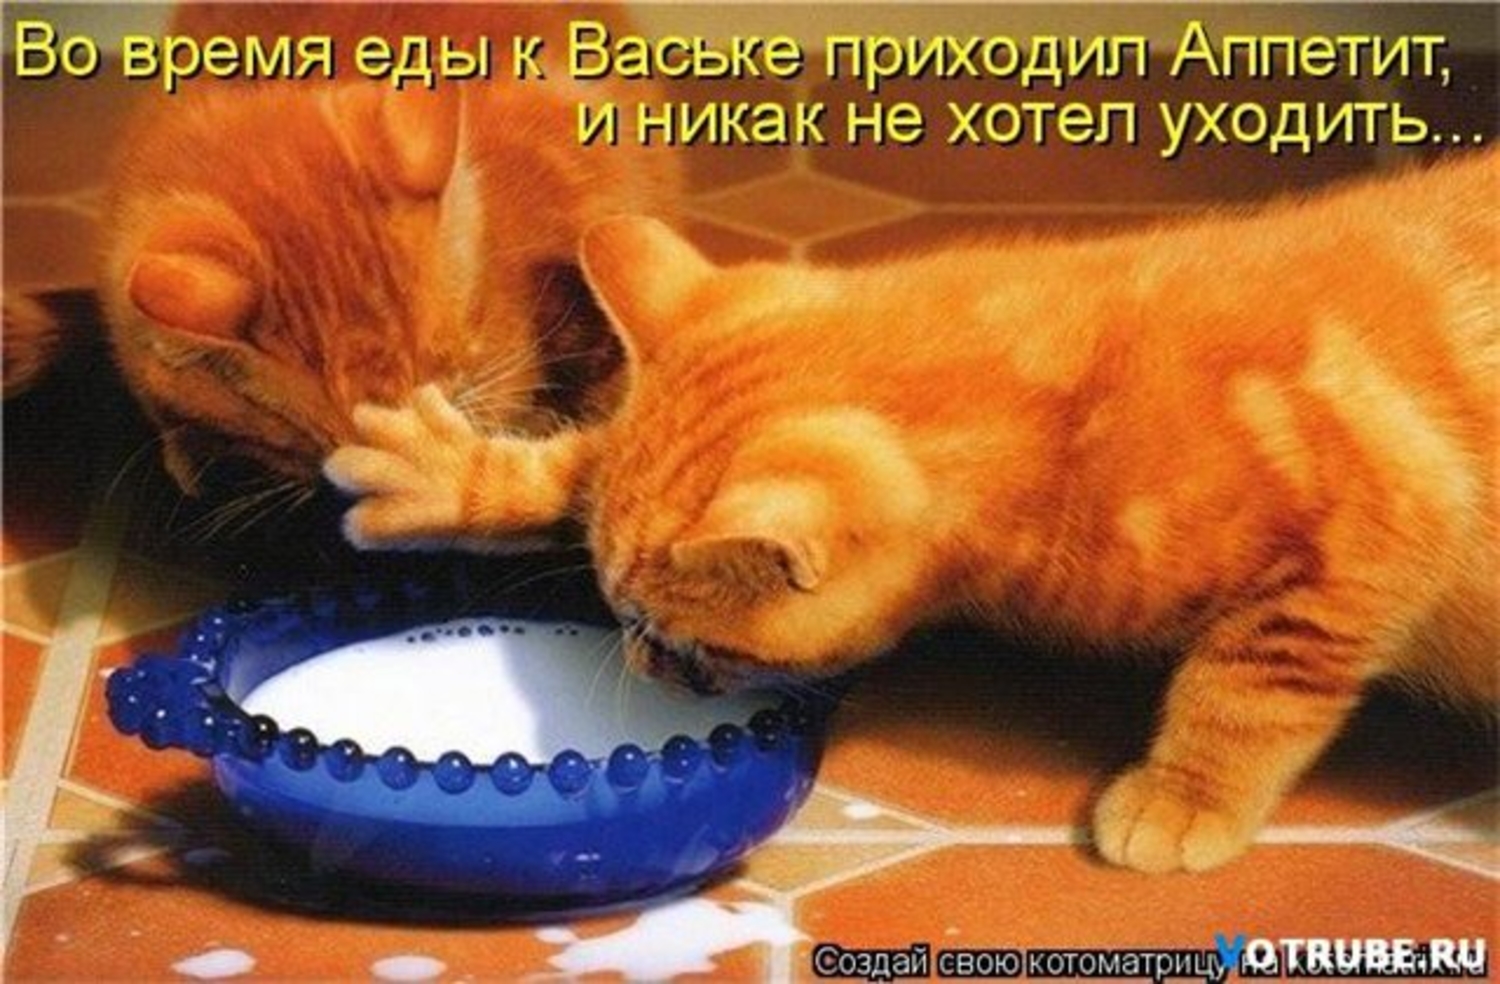 Хочу быть никак все. Кот хочет есть. Жадные коты. Миска для кота. Рыжий кот юмор.